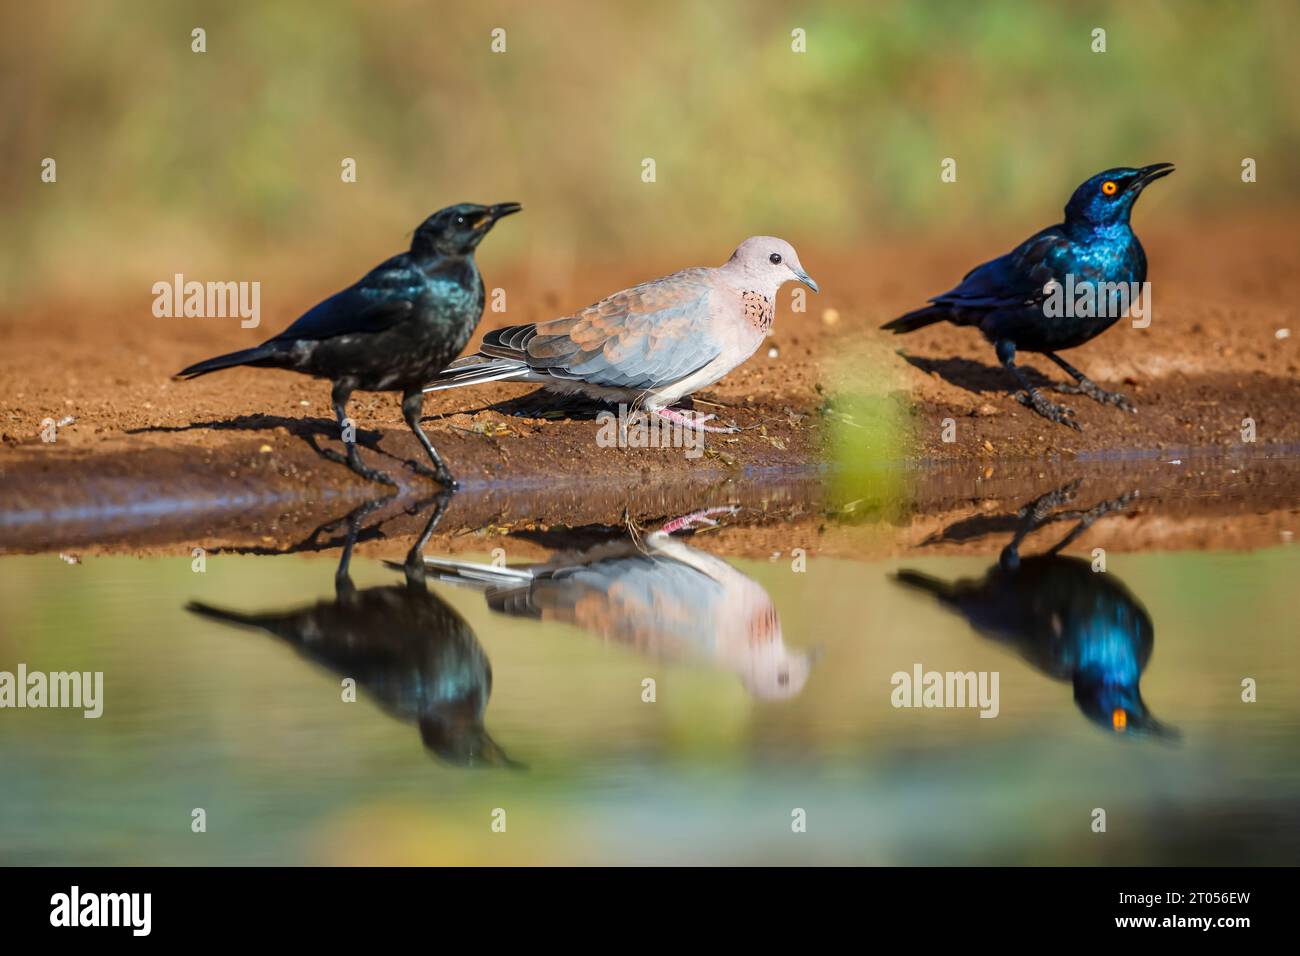 La colombe riante et le cap Glossy Starling dans le parc national Kruger, Afrique du Sud ; espèce Streptopelia senegalensis et Lamprotornis nitens Banque D'Images